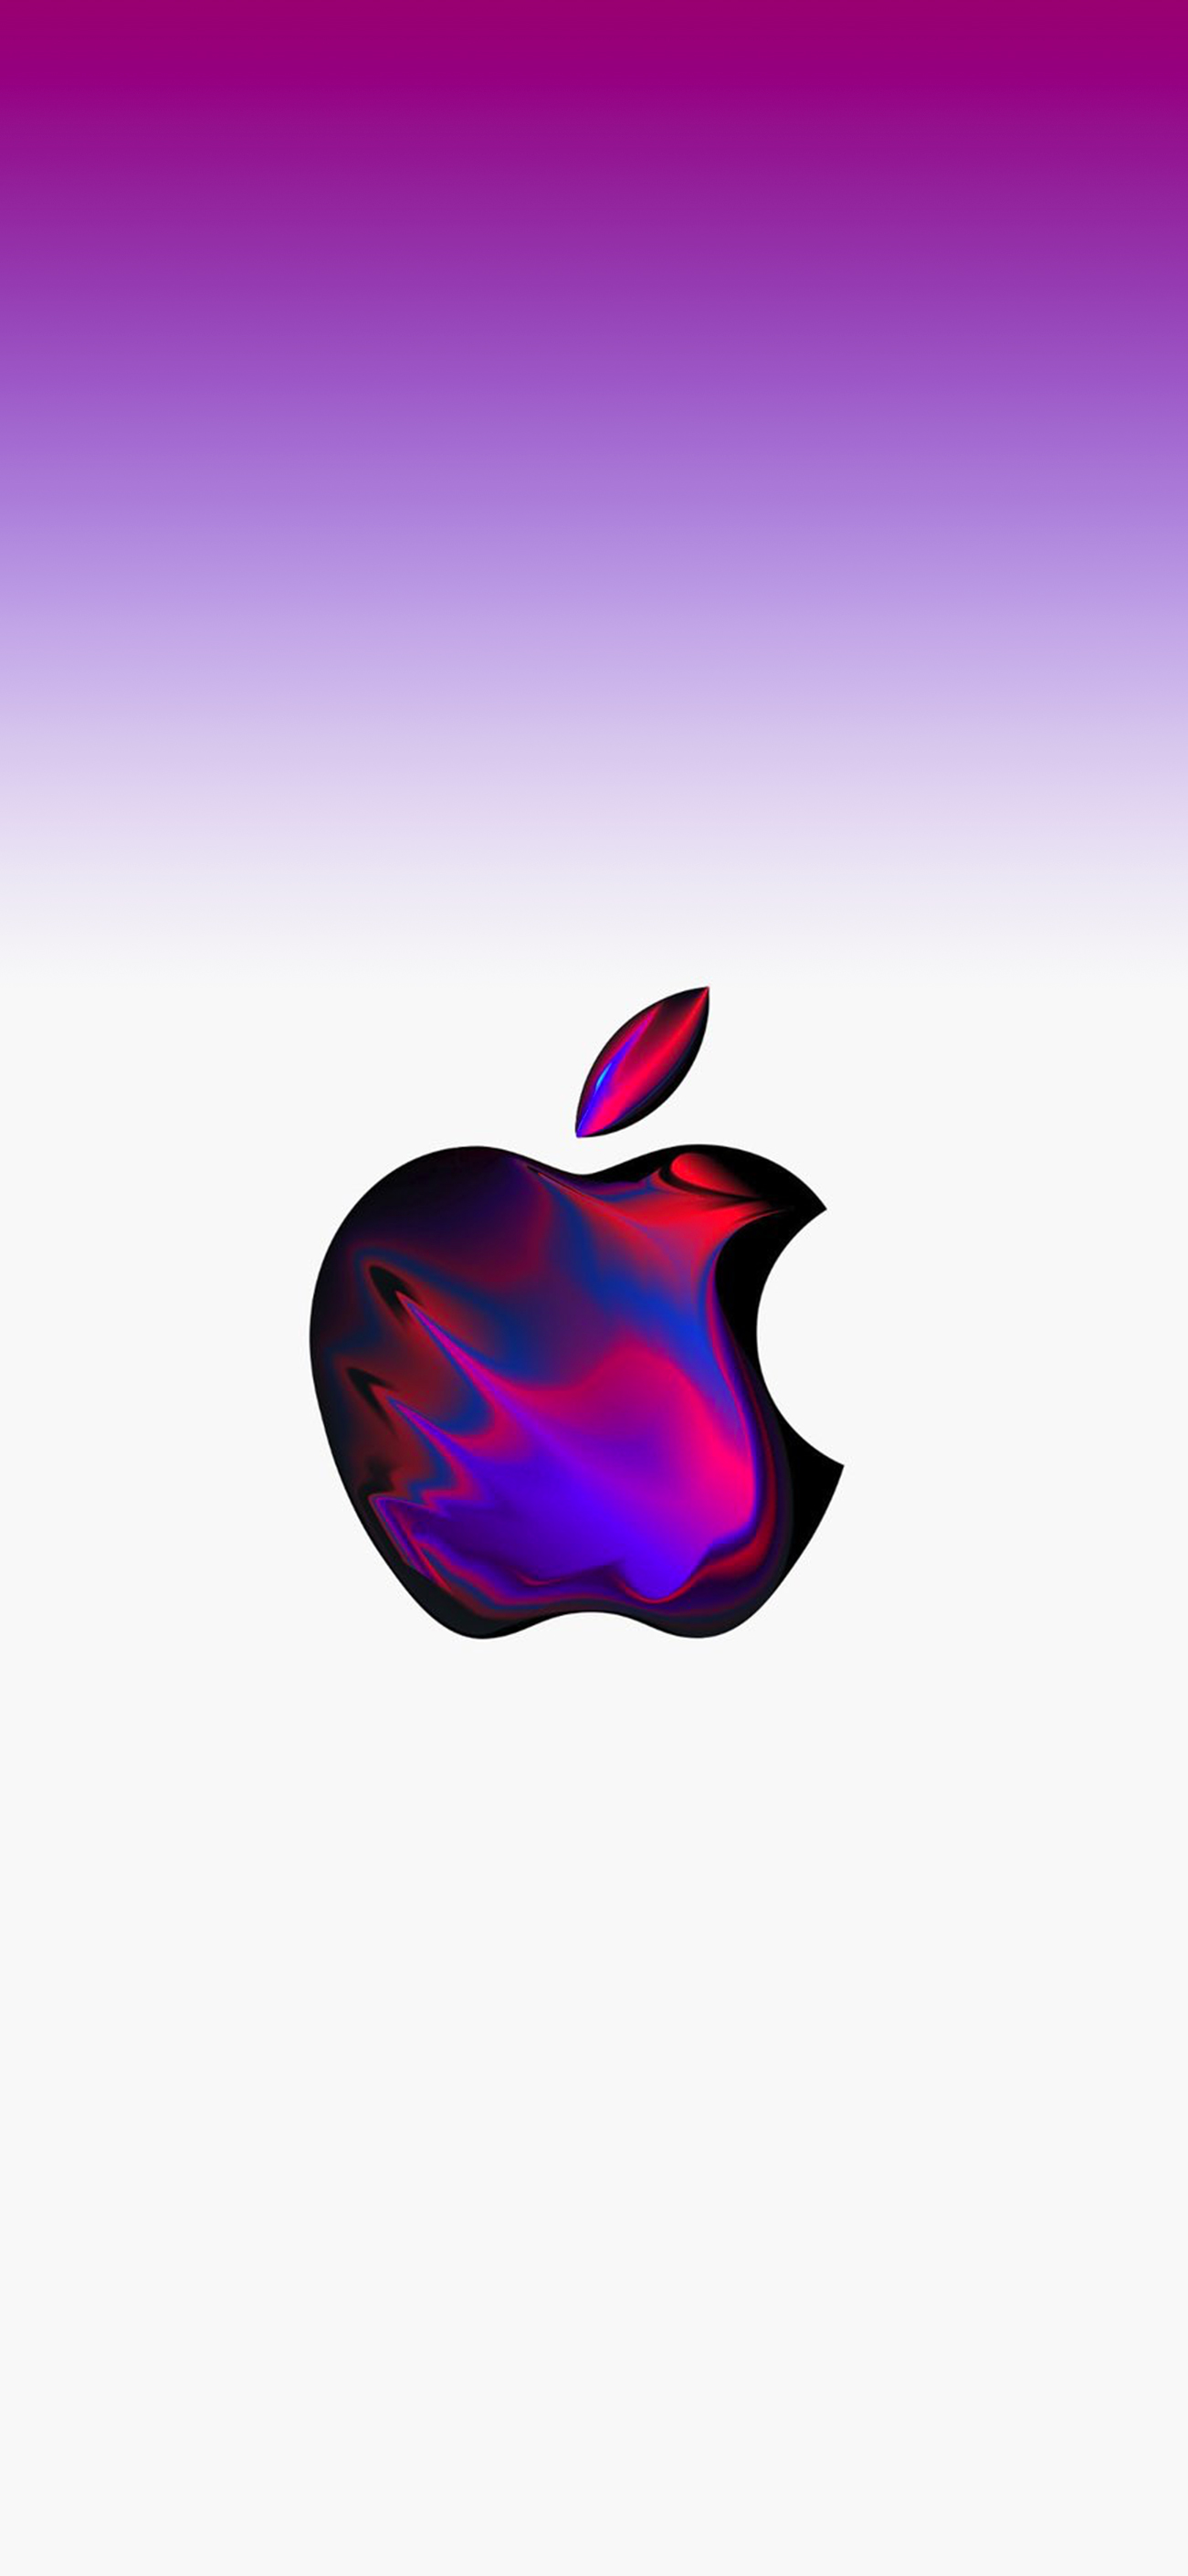 Mời tải về hình nền logo Apple bằng nhôm cho iPhone  iThuThuat